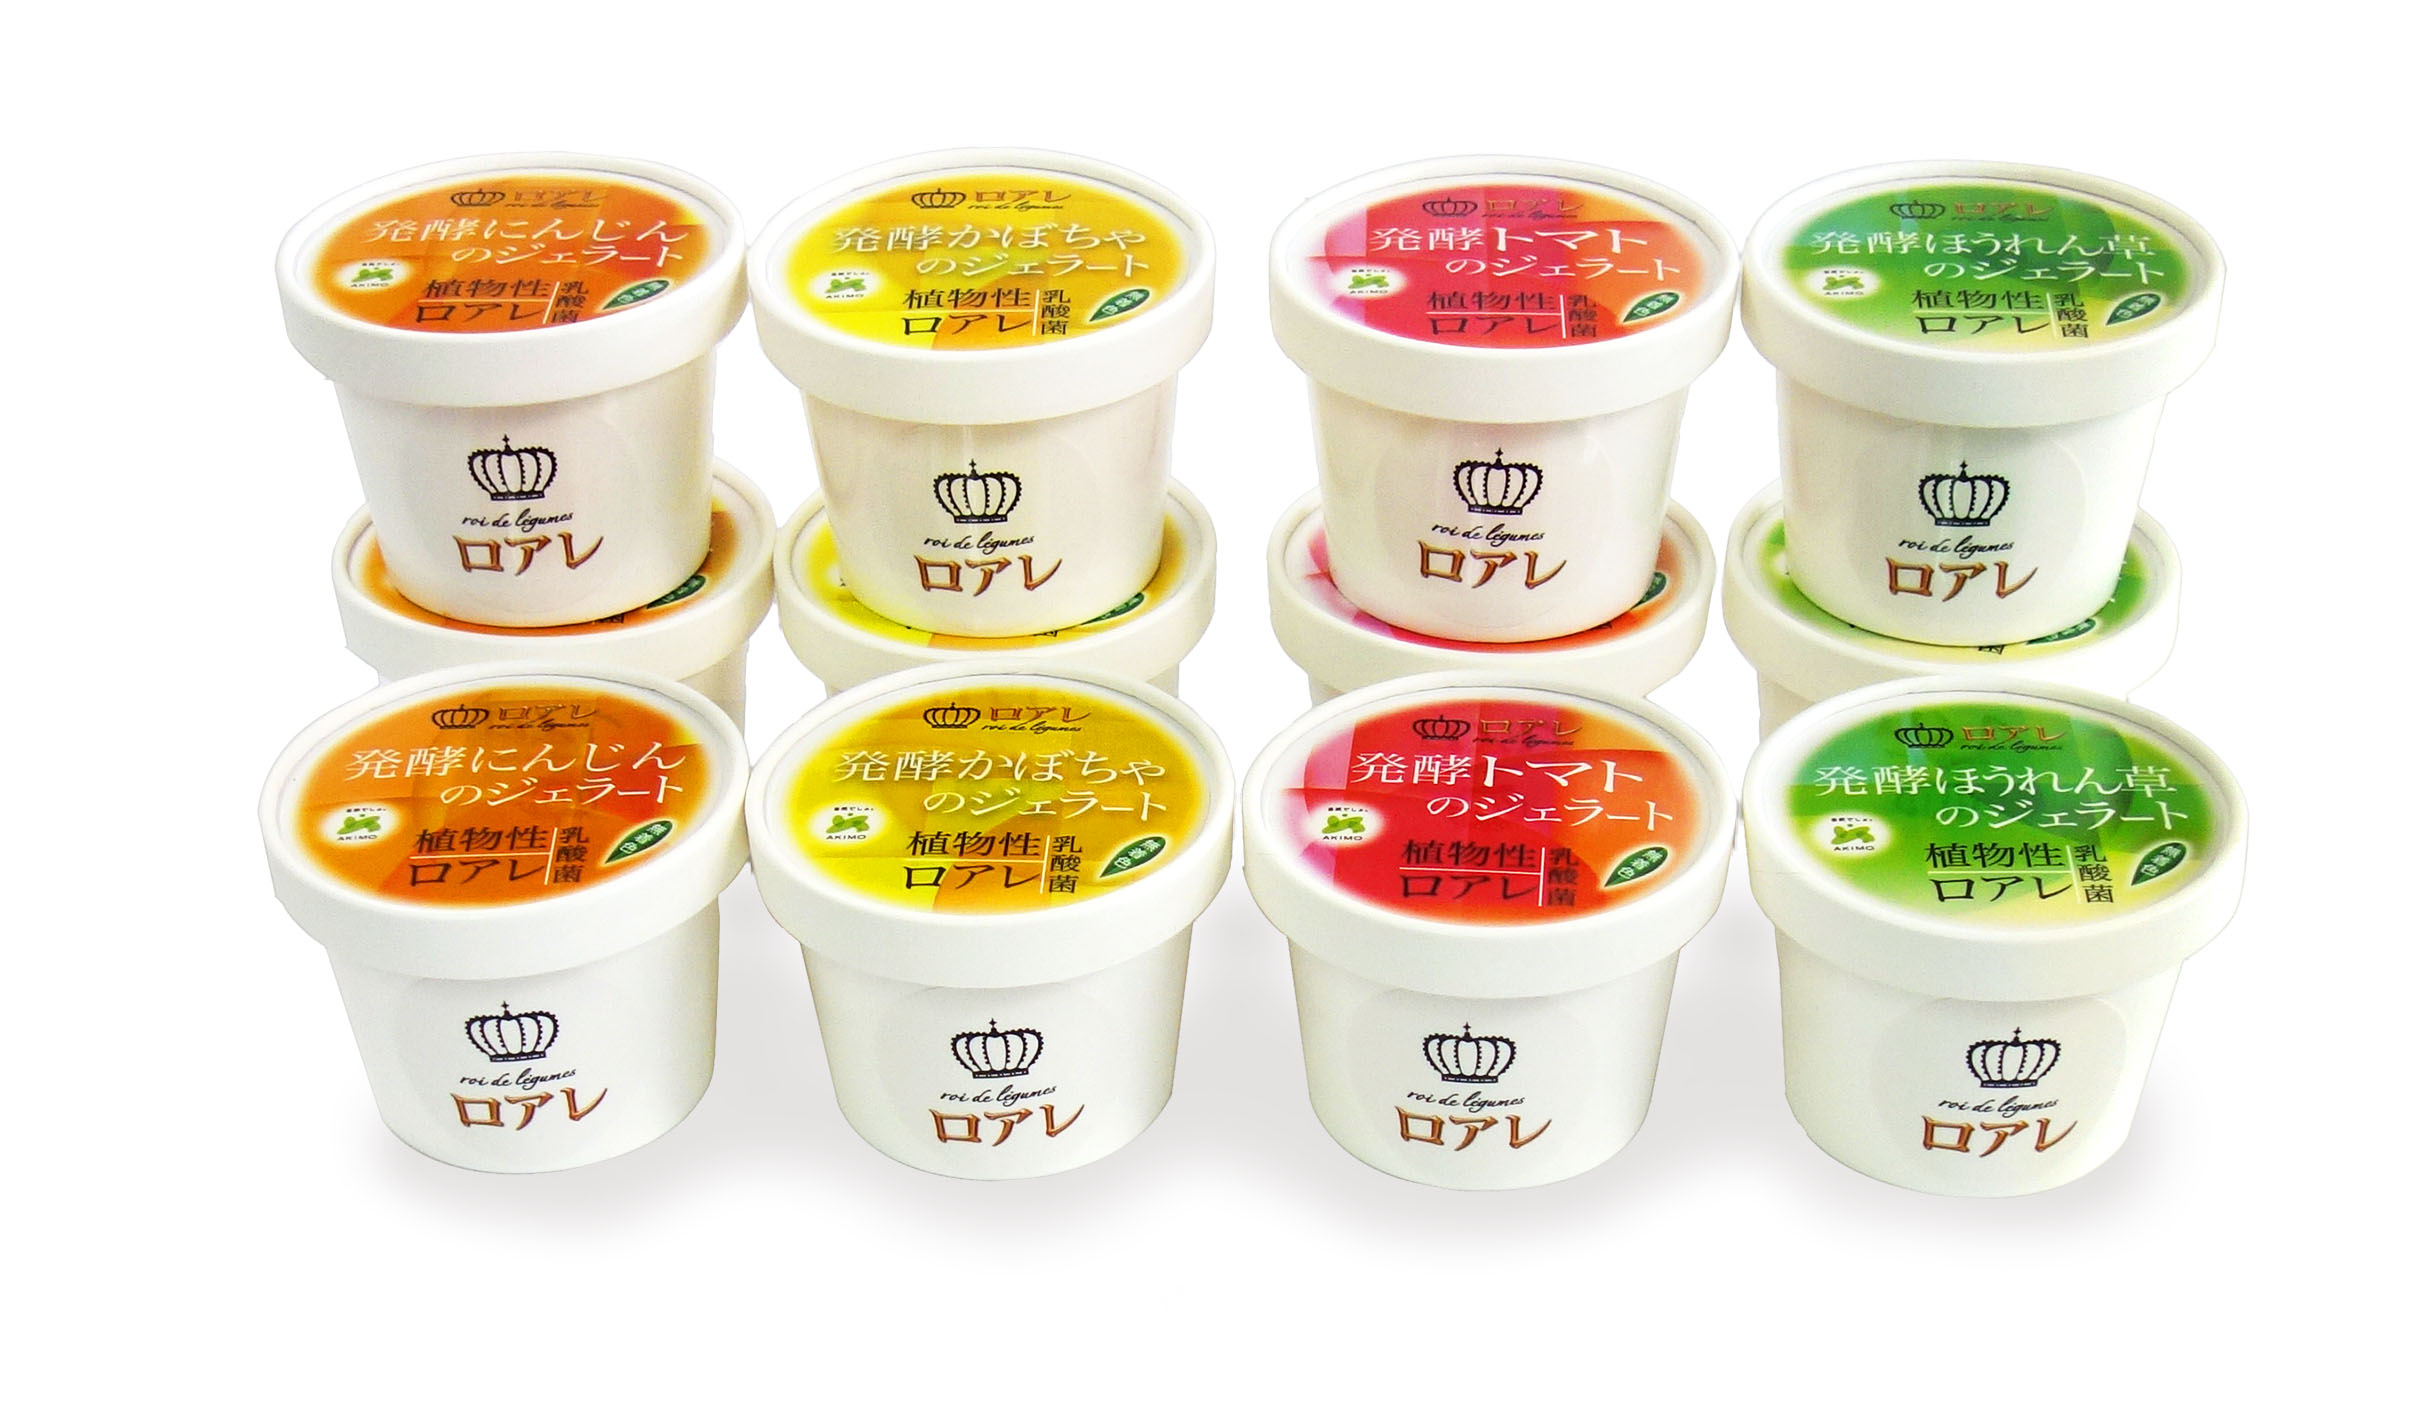 【メディア掲載】日経MJに新商品『ロアレ 発酵野菜のジェラート』が紹介されました - 株式会社アキモ